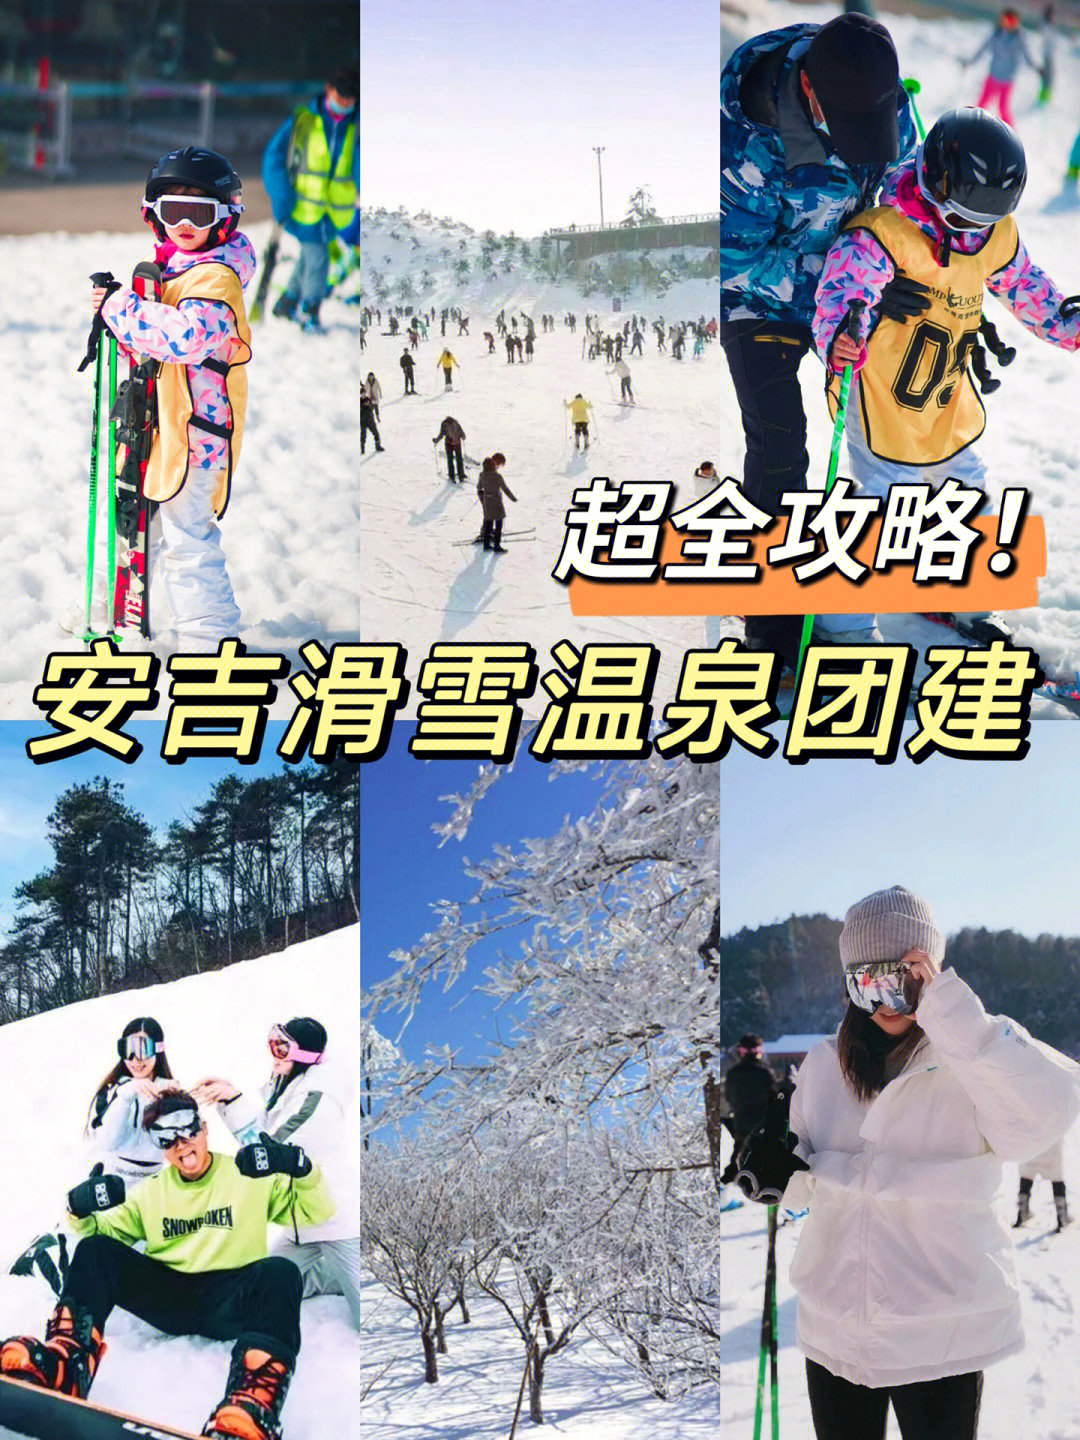 73安吉江南天池滑雪场是江南唯一冬季野外滑雪场,全长近800米,拥有6